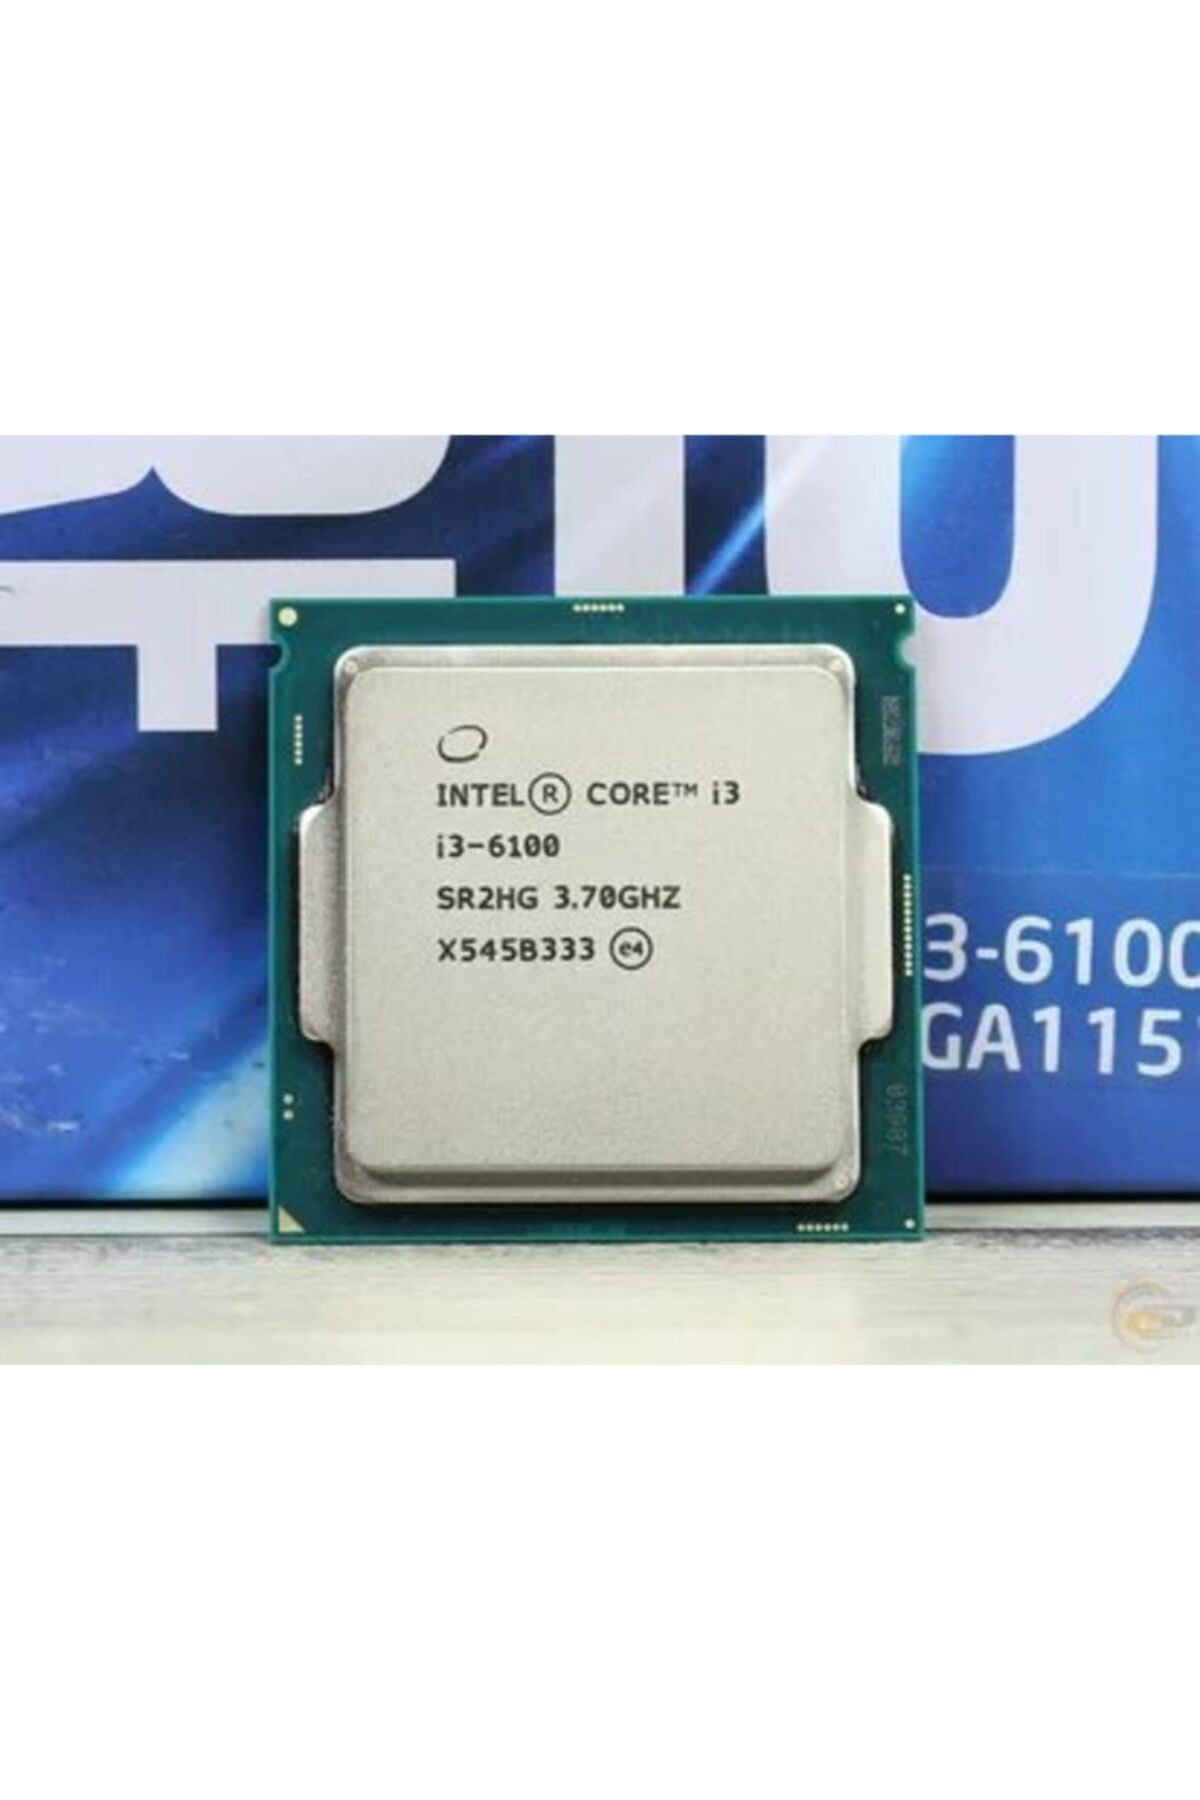 Intel i3 6100 3.70GHz 3M R2HG ISLEMCI